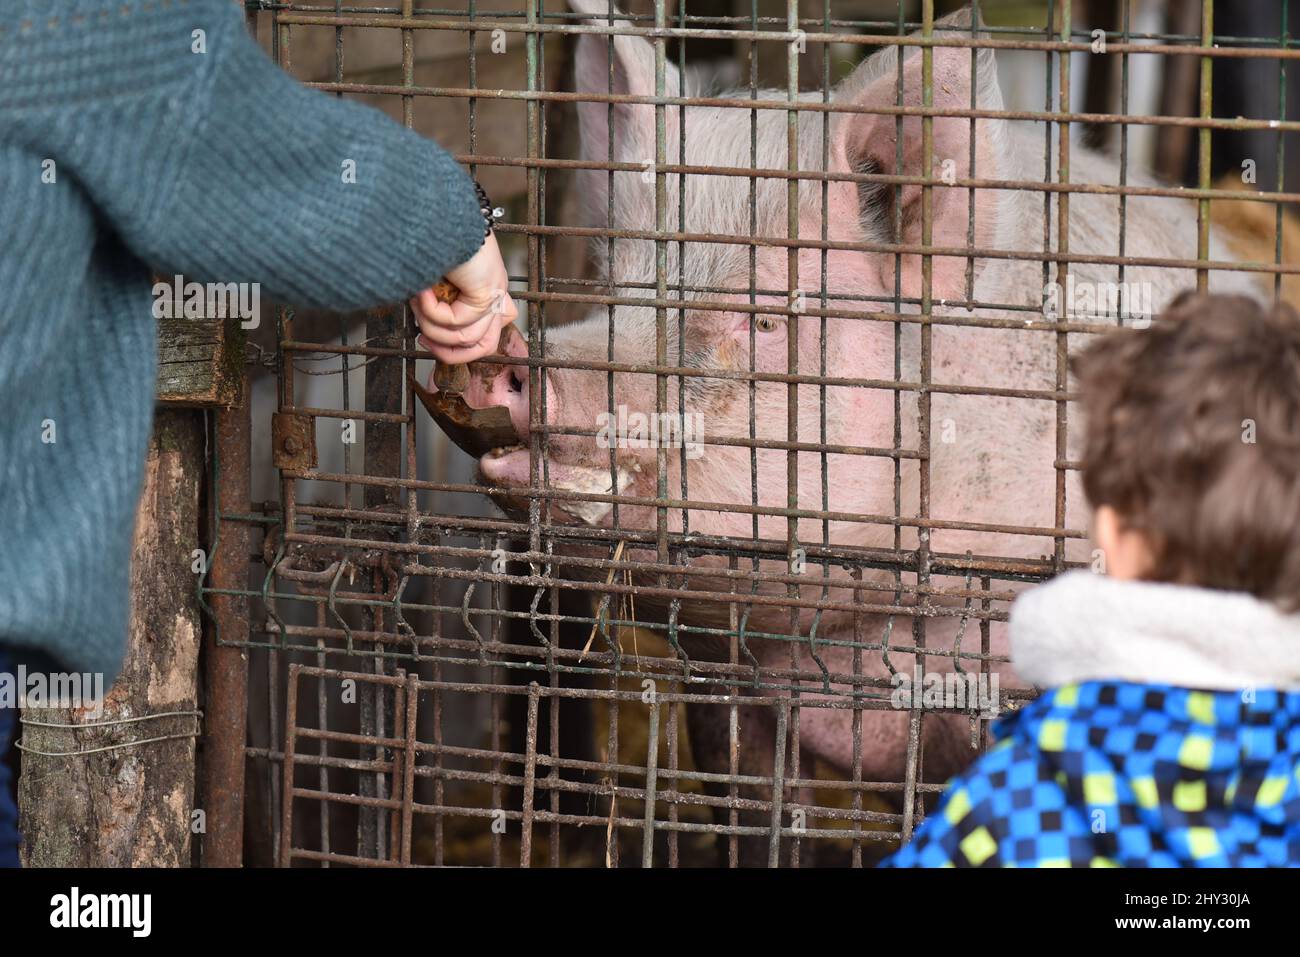 Mutter füttert ein riesiges rosafarbenes Schwein durch einen Drahtzaun auf einem Bauernhof, während sein Kind zuschaut. Schwein, der Getreide aus den Händen einer Frau isst. Stockfoto